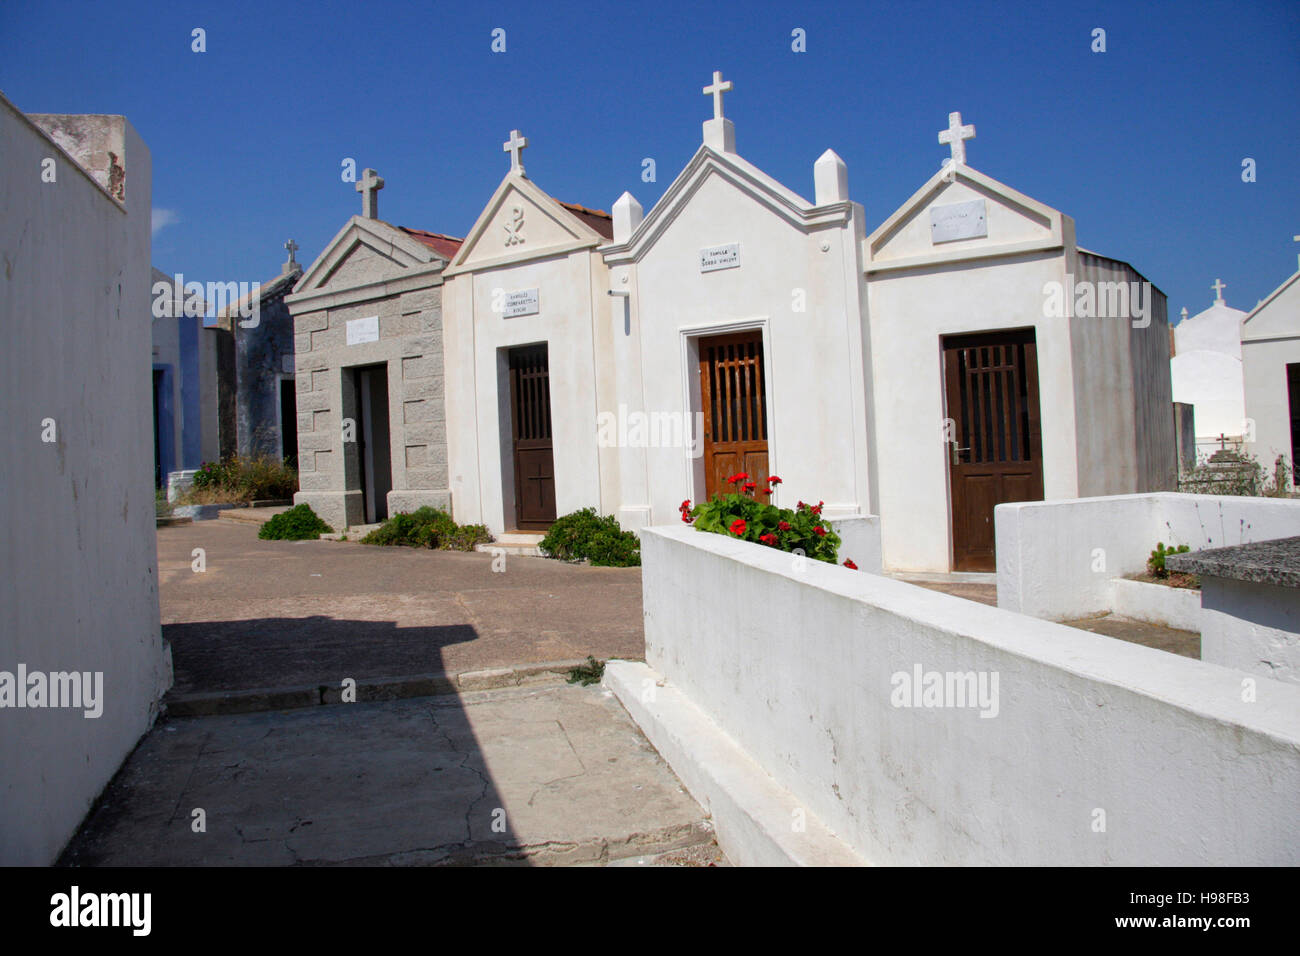 Cimitiere Marin de Bonifacio, Bonifacio, Korsika, Frankreich. Stockfoto